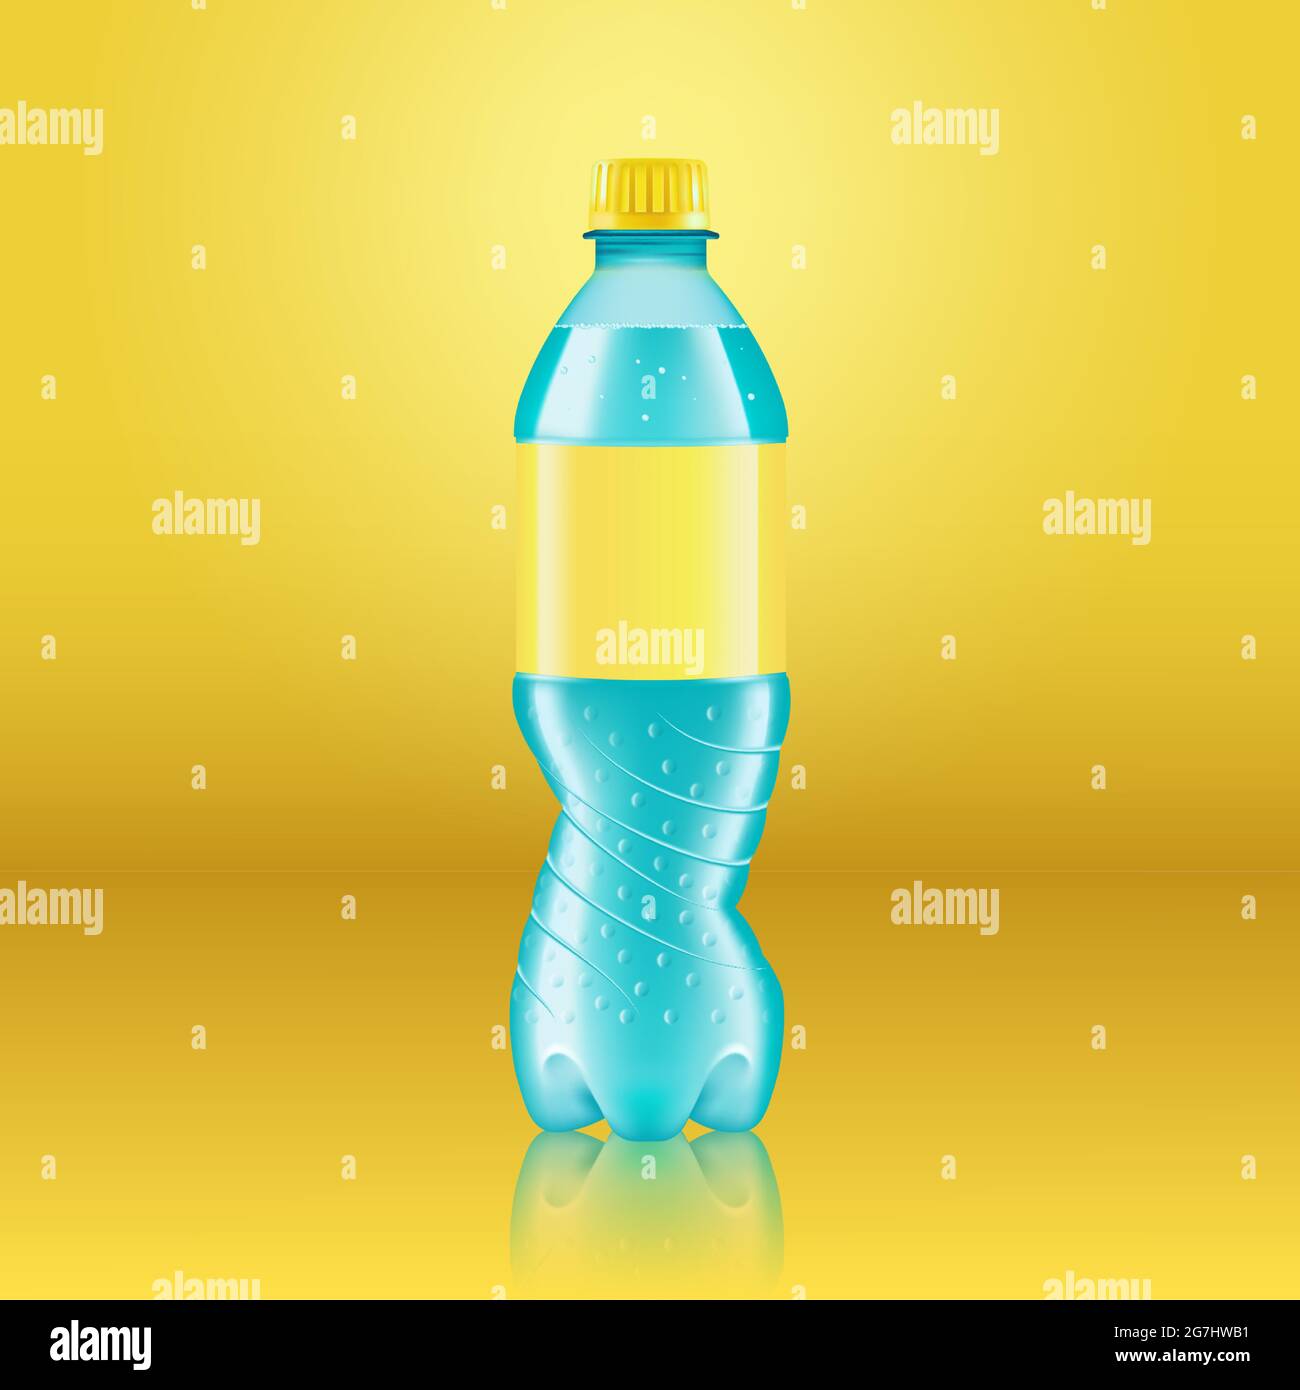 Maquette réaliste de bouteille de limonade au soda avec étiquette jaune isolée sur fond jaune réfléchie par le sol, illustration vectorielle. Adapté à Illustration de Vecteur